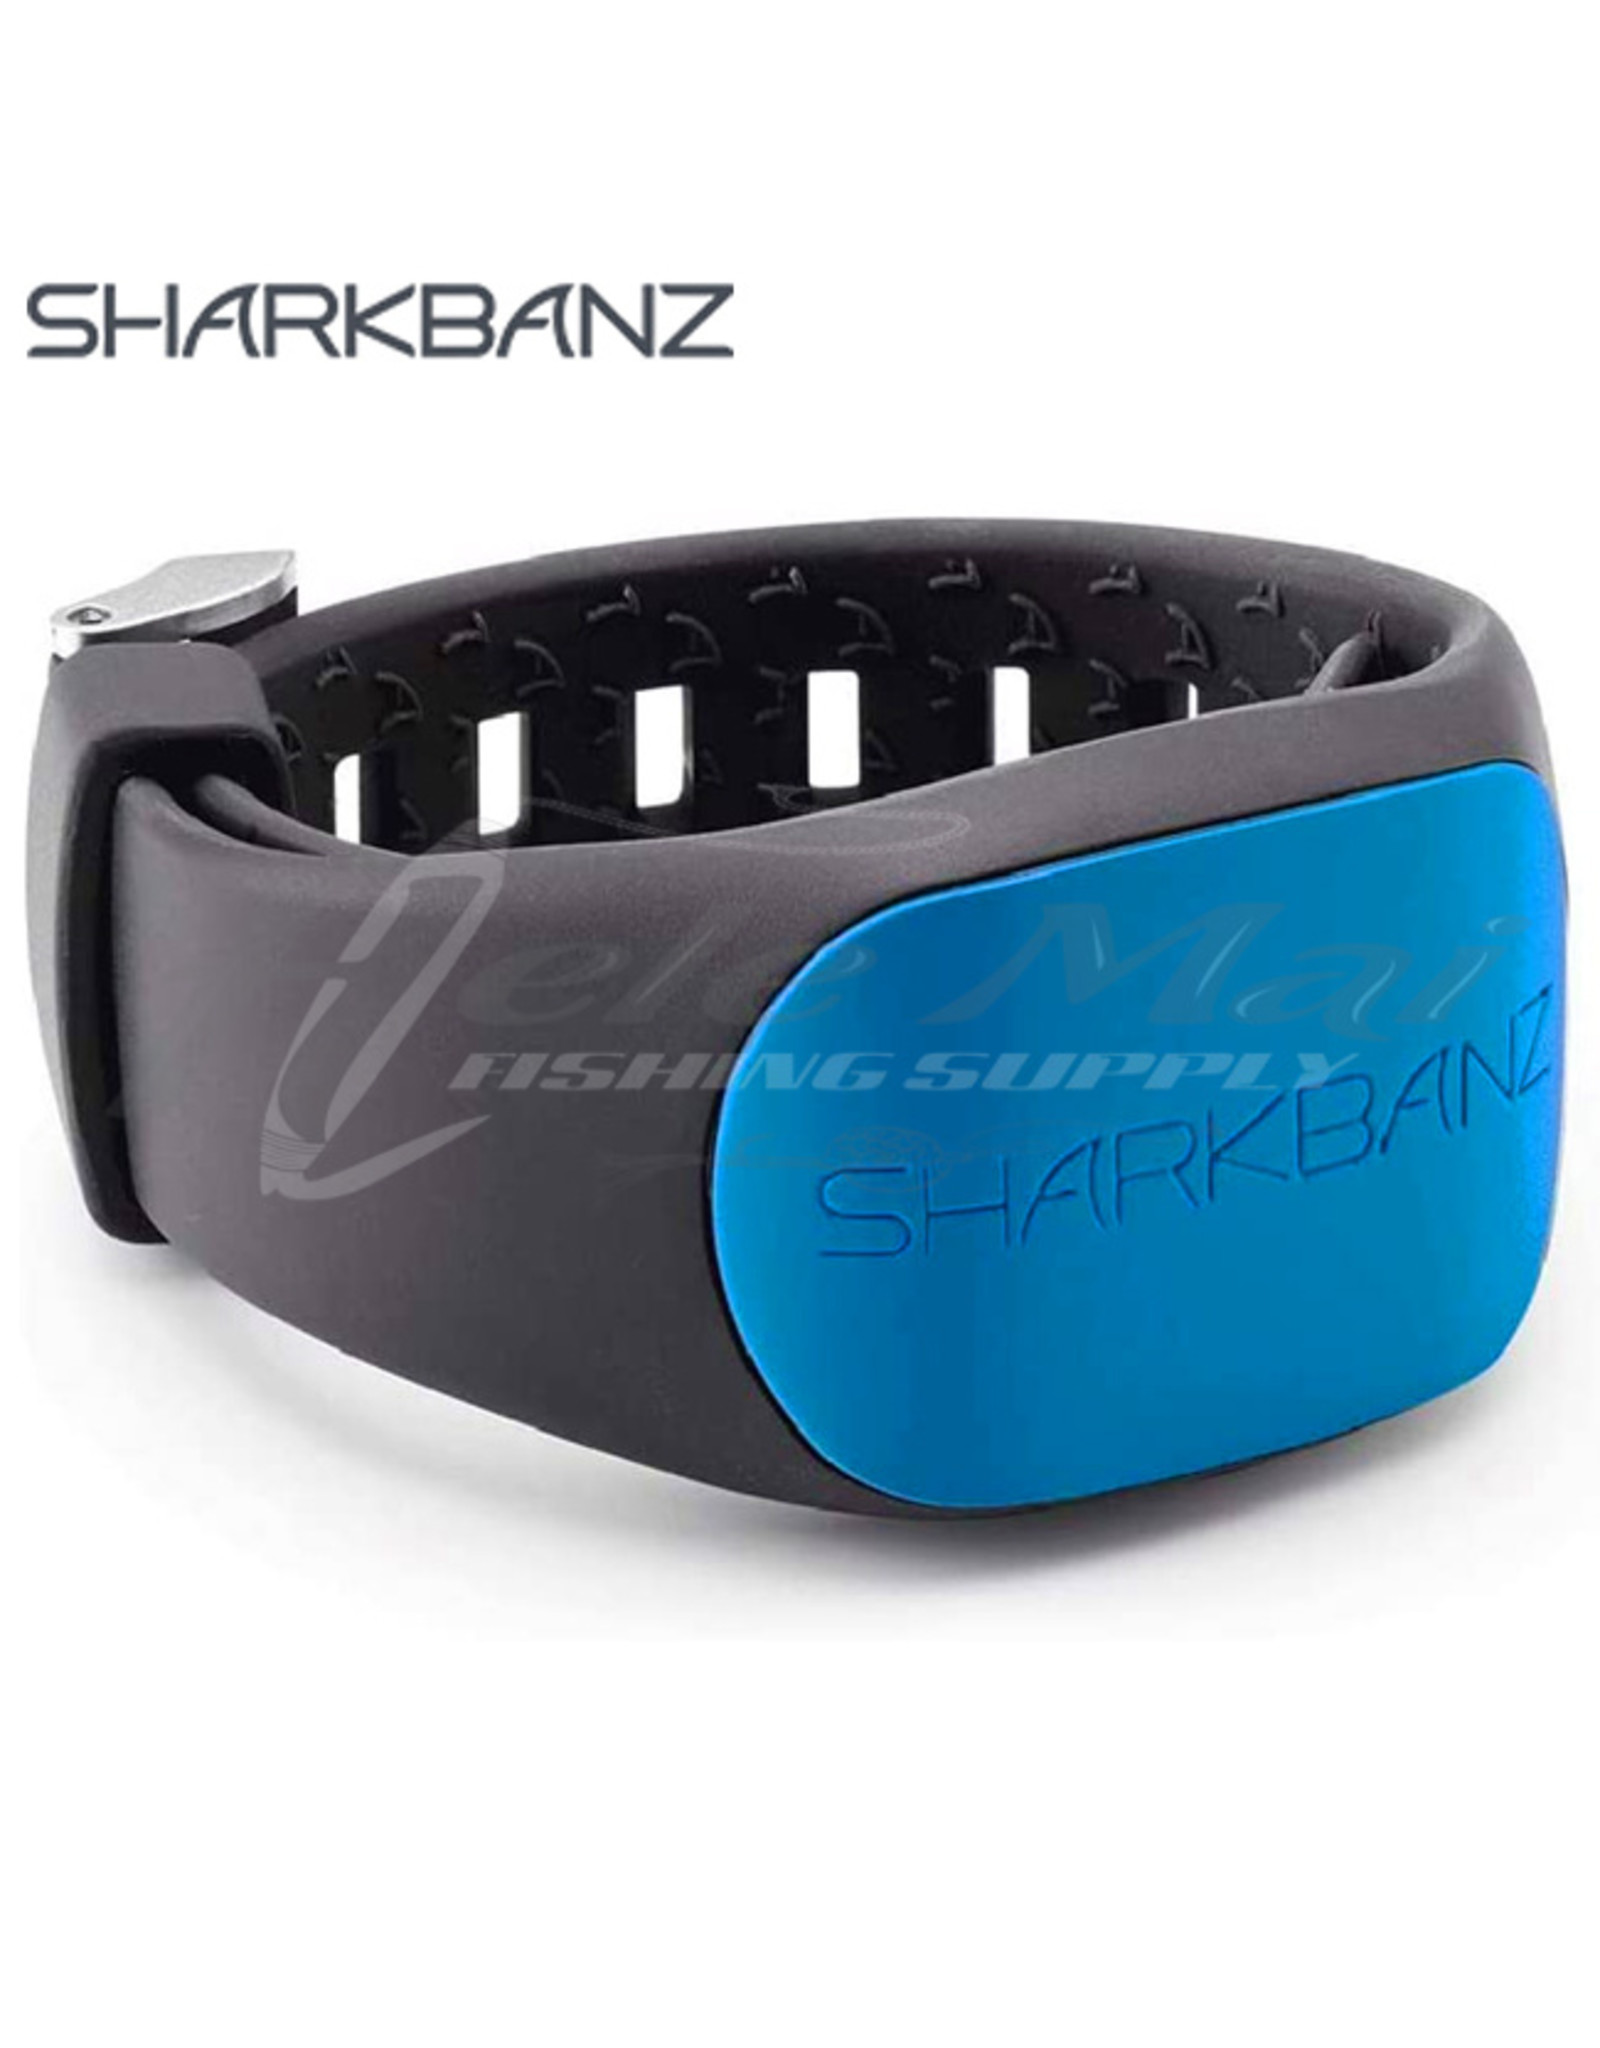 SHARKBANZ SHARKBANZ, Active Shark Deterrent Band, Slate/Azure